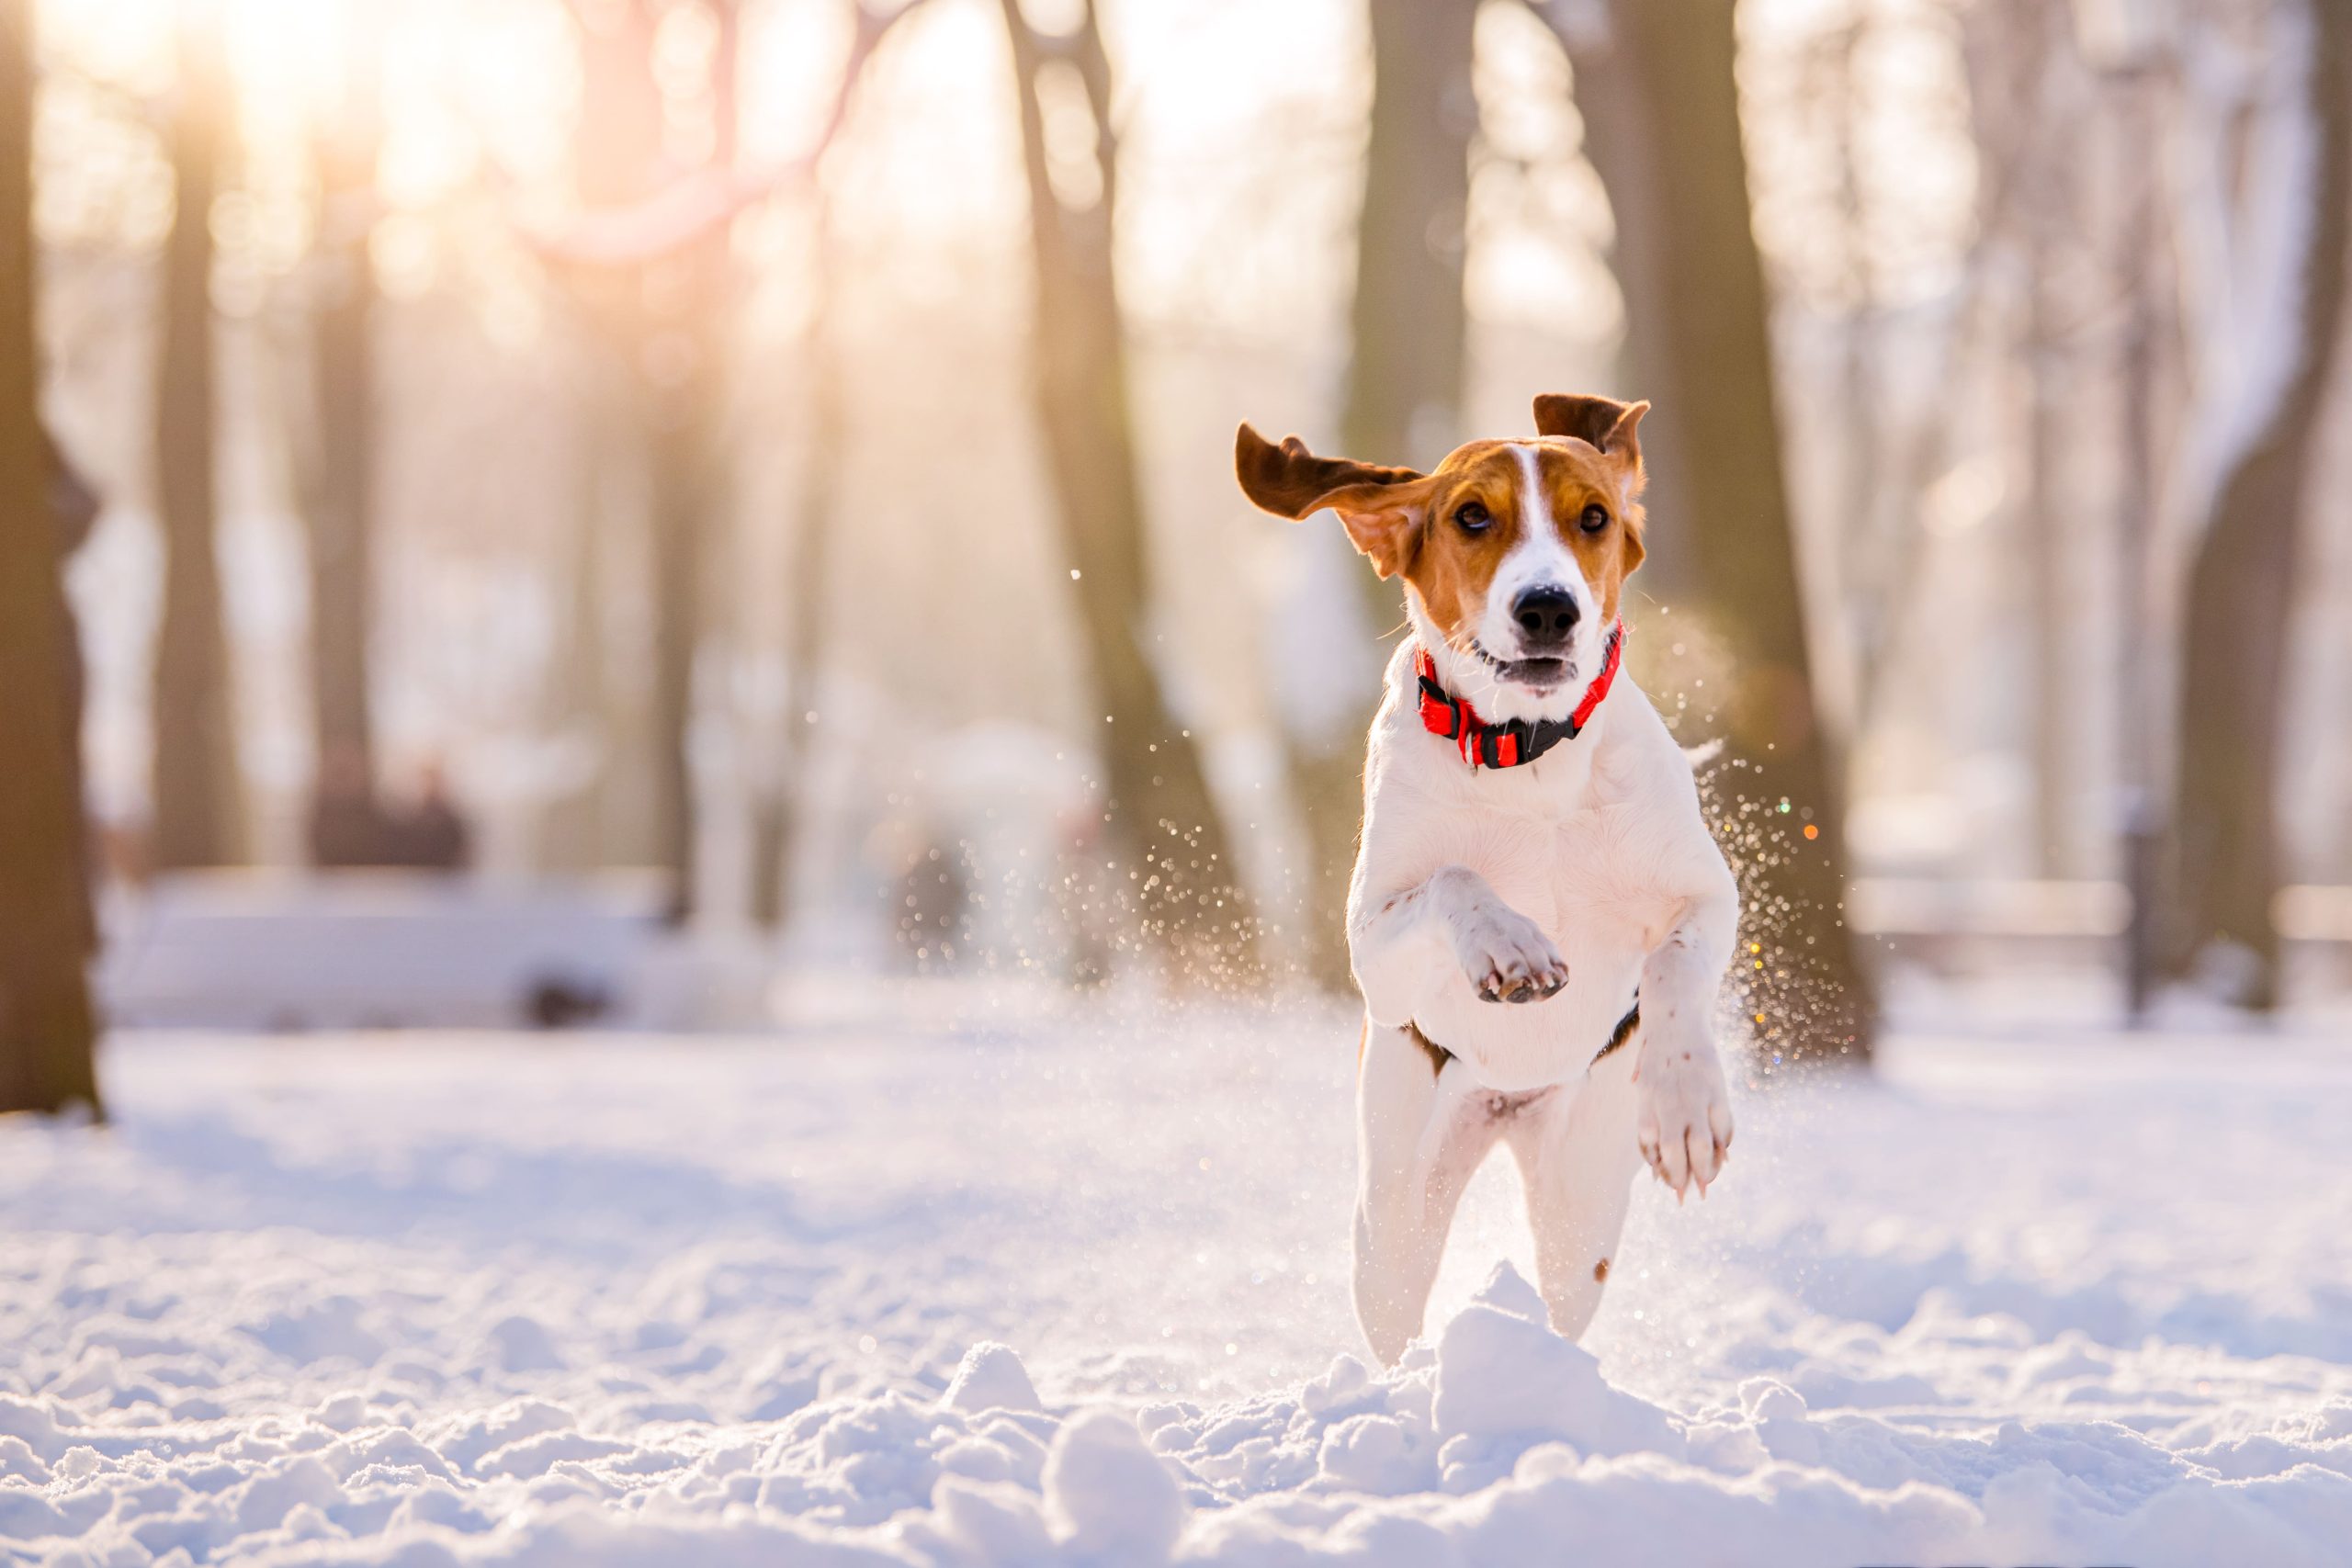 proteger articulaciones de los perros del frío